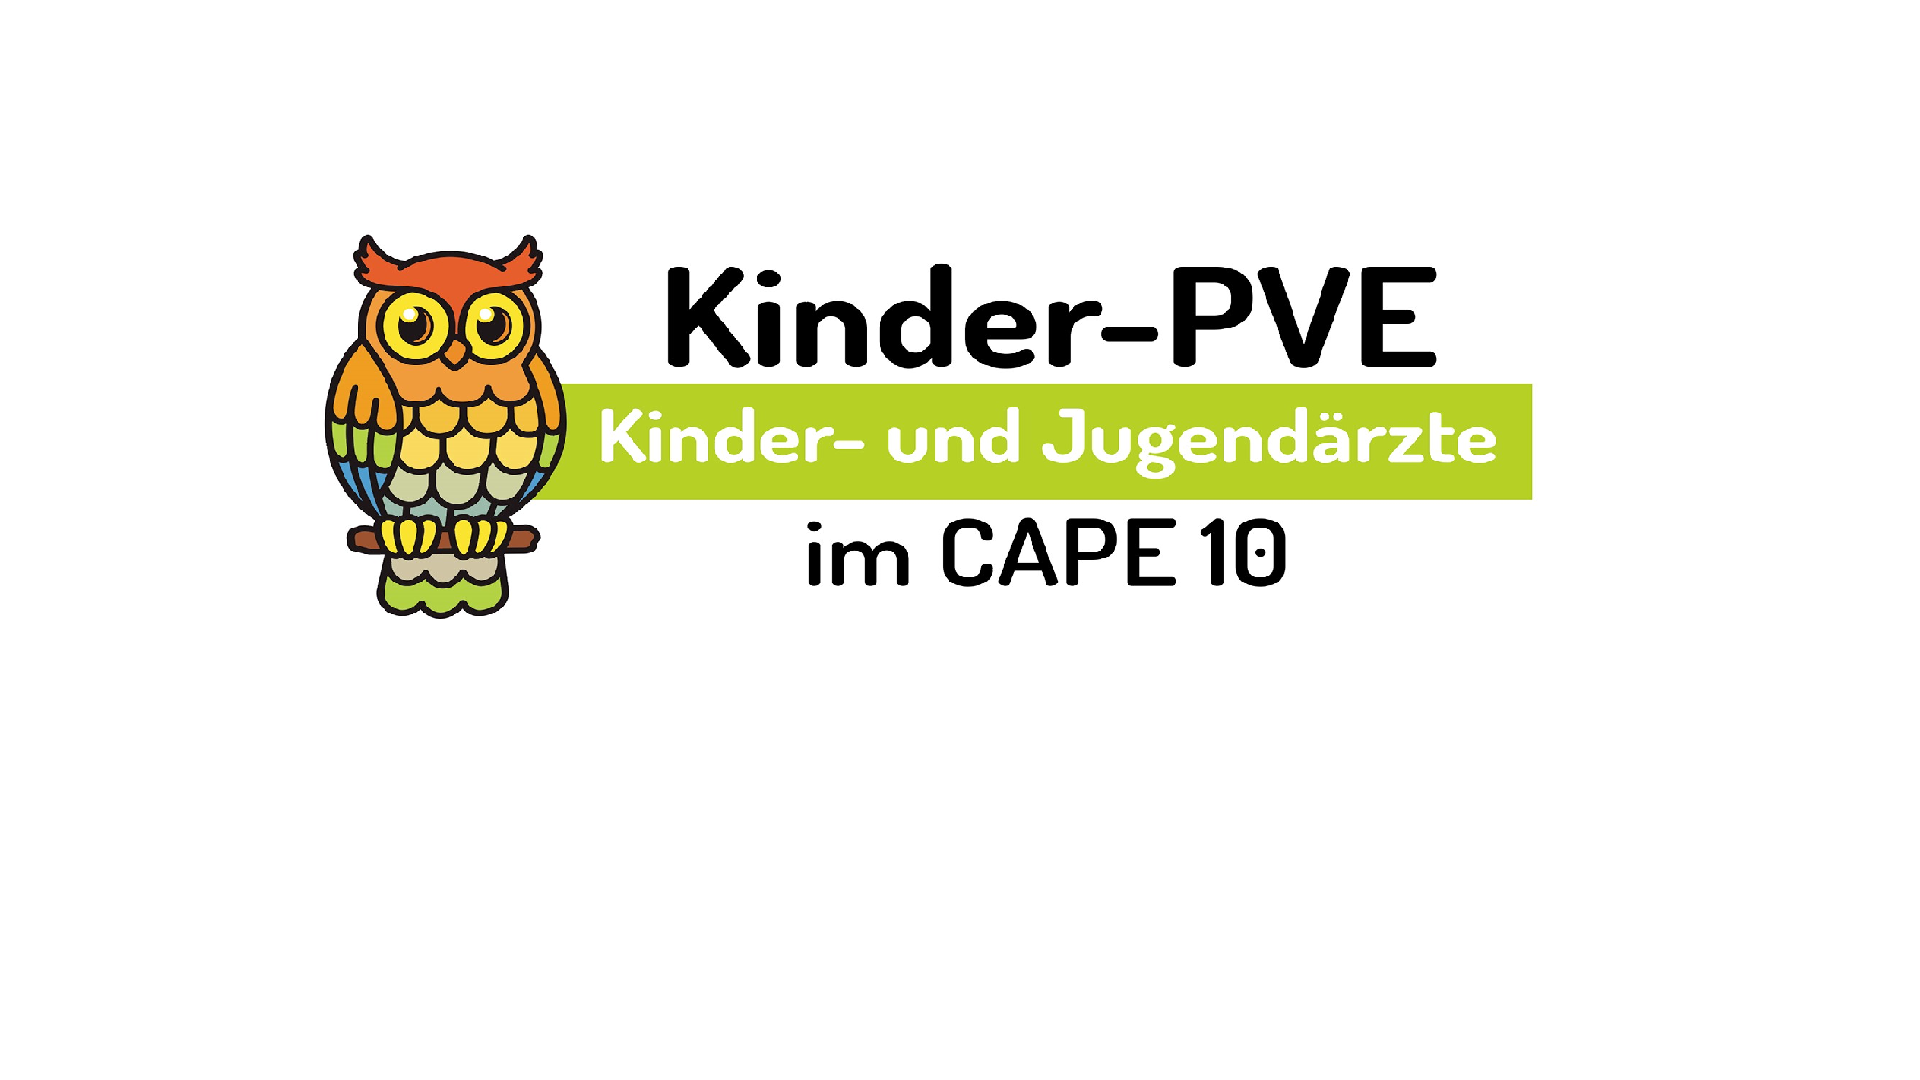 Das Bild zeigt das Logo Kinder-PVE im Cape 10.